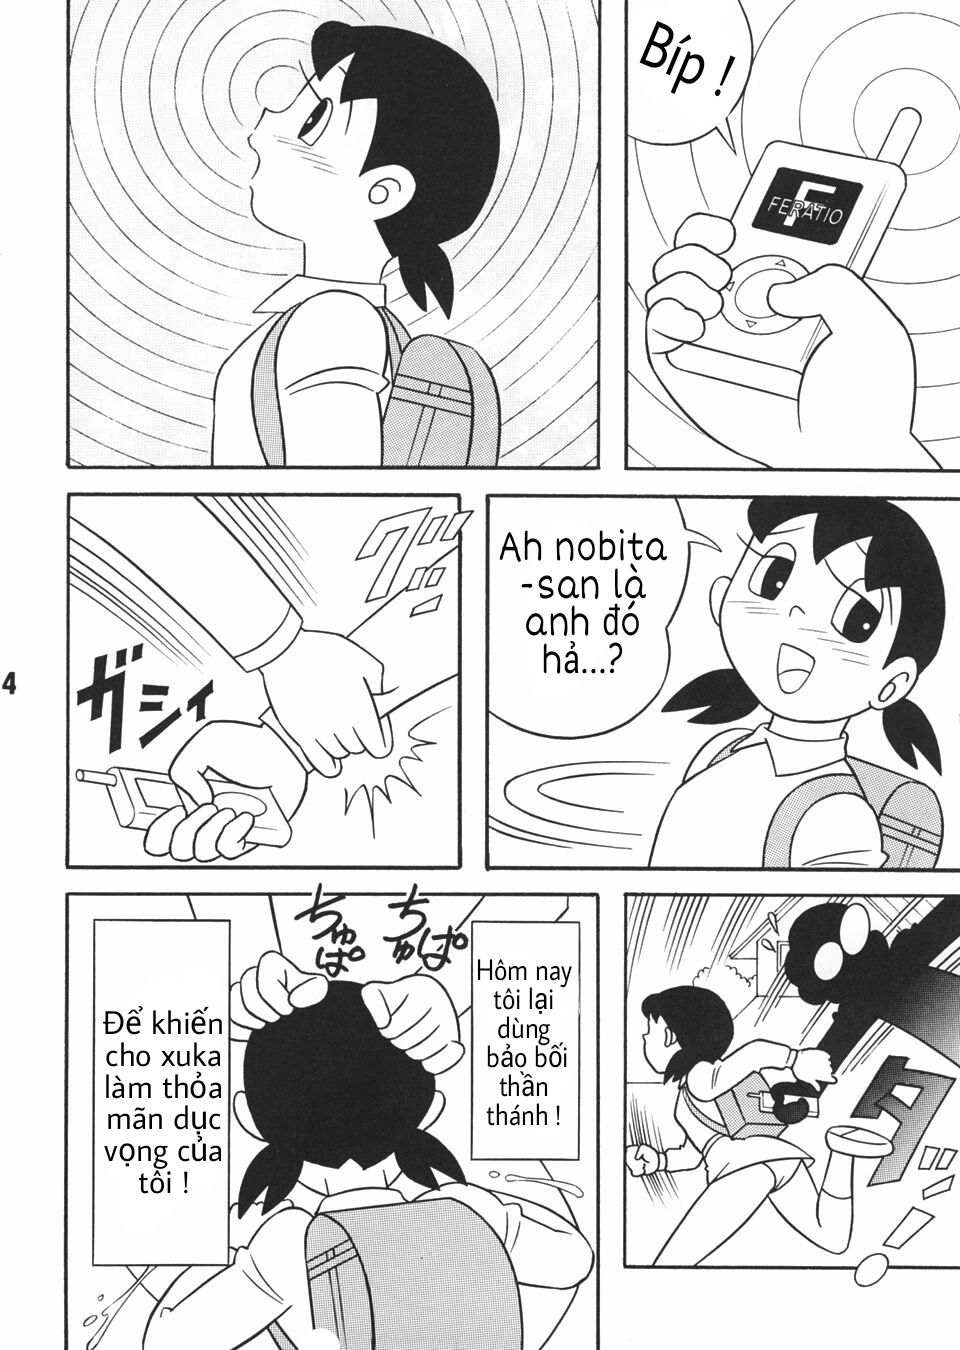 Tuyển Tập Doraemon Doujinshi 18+  Chapter 3 - Máy phát sóng gợi dục - Trang 2